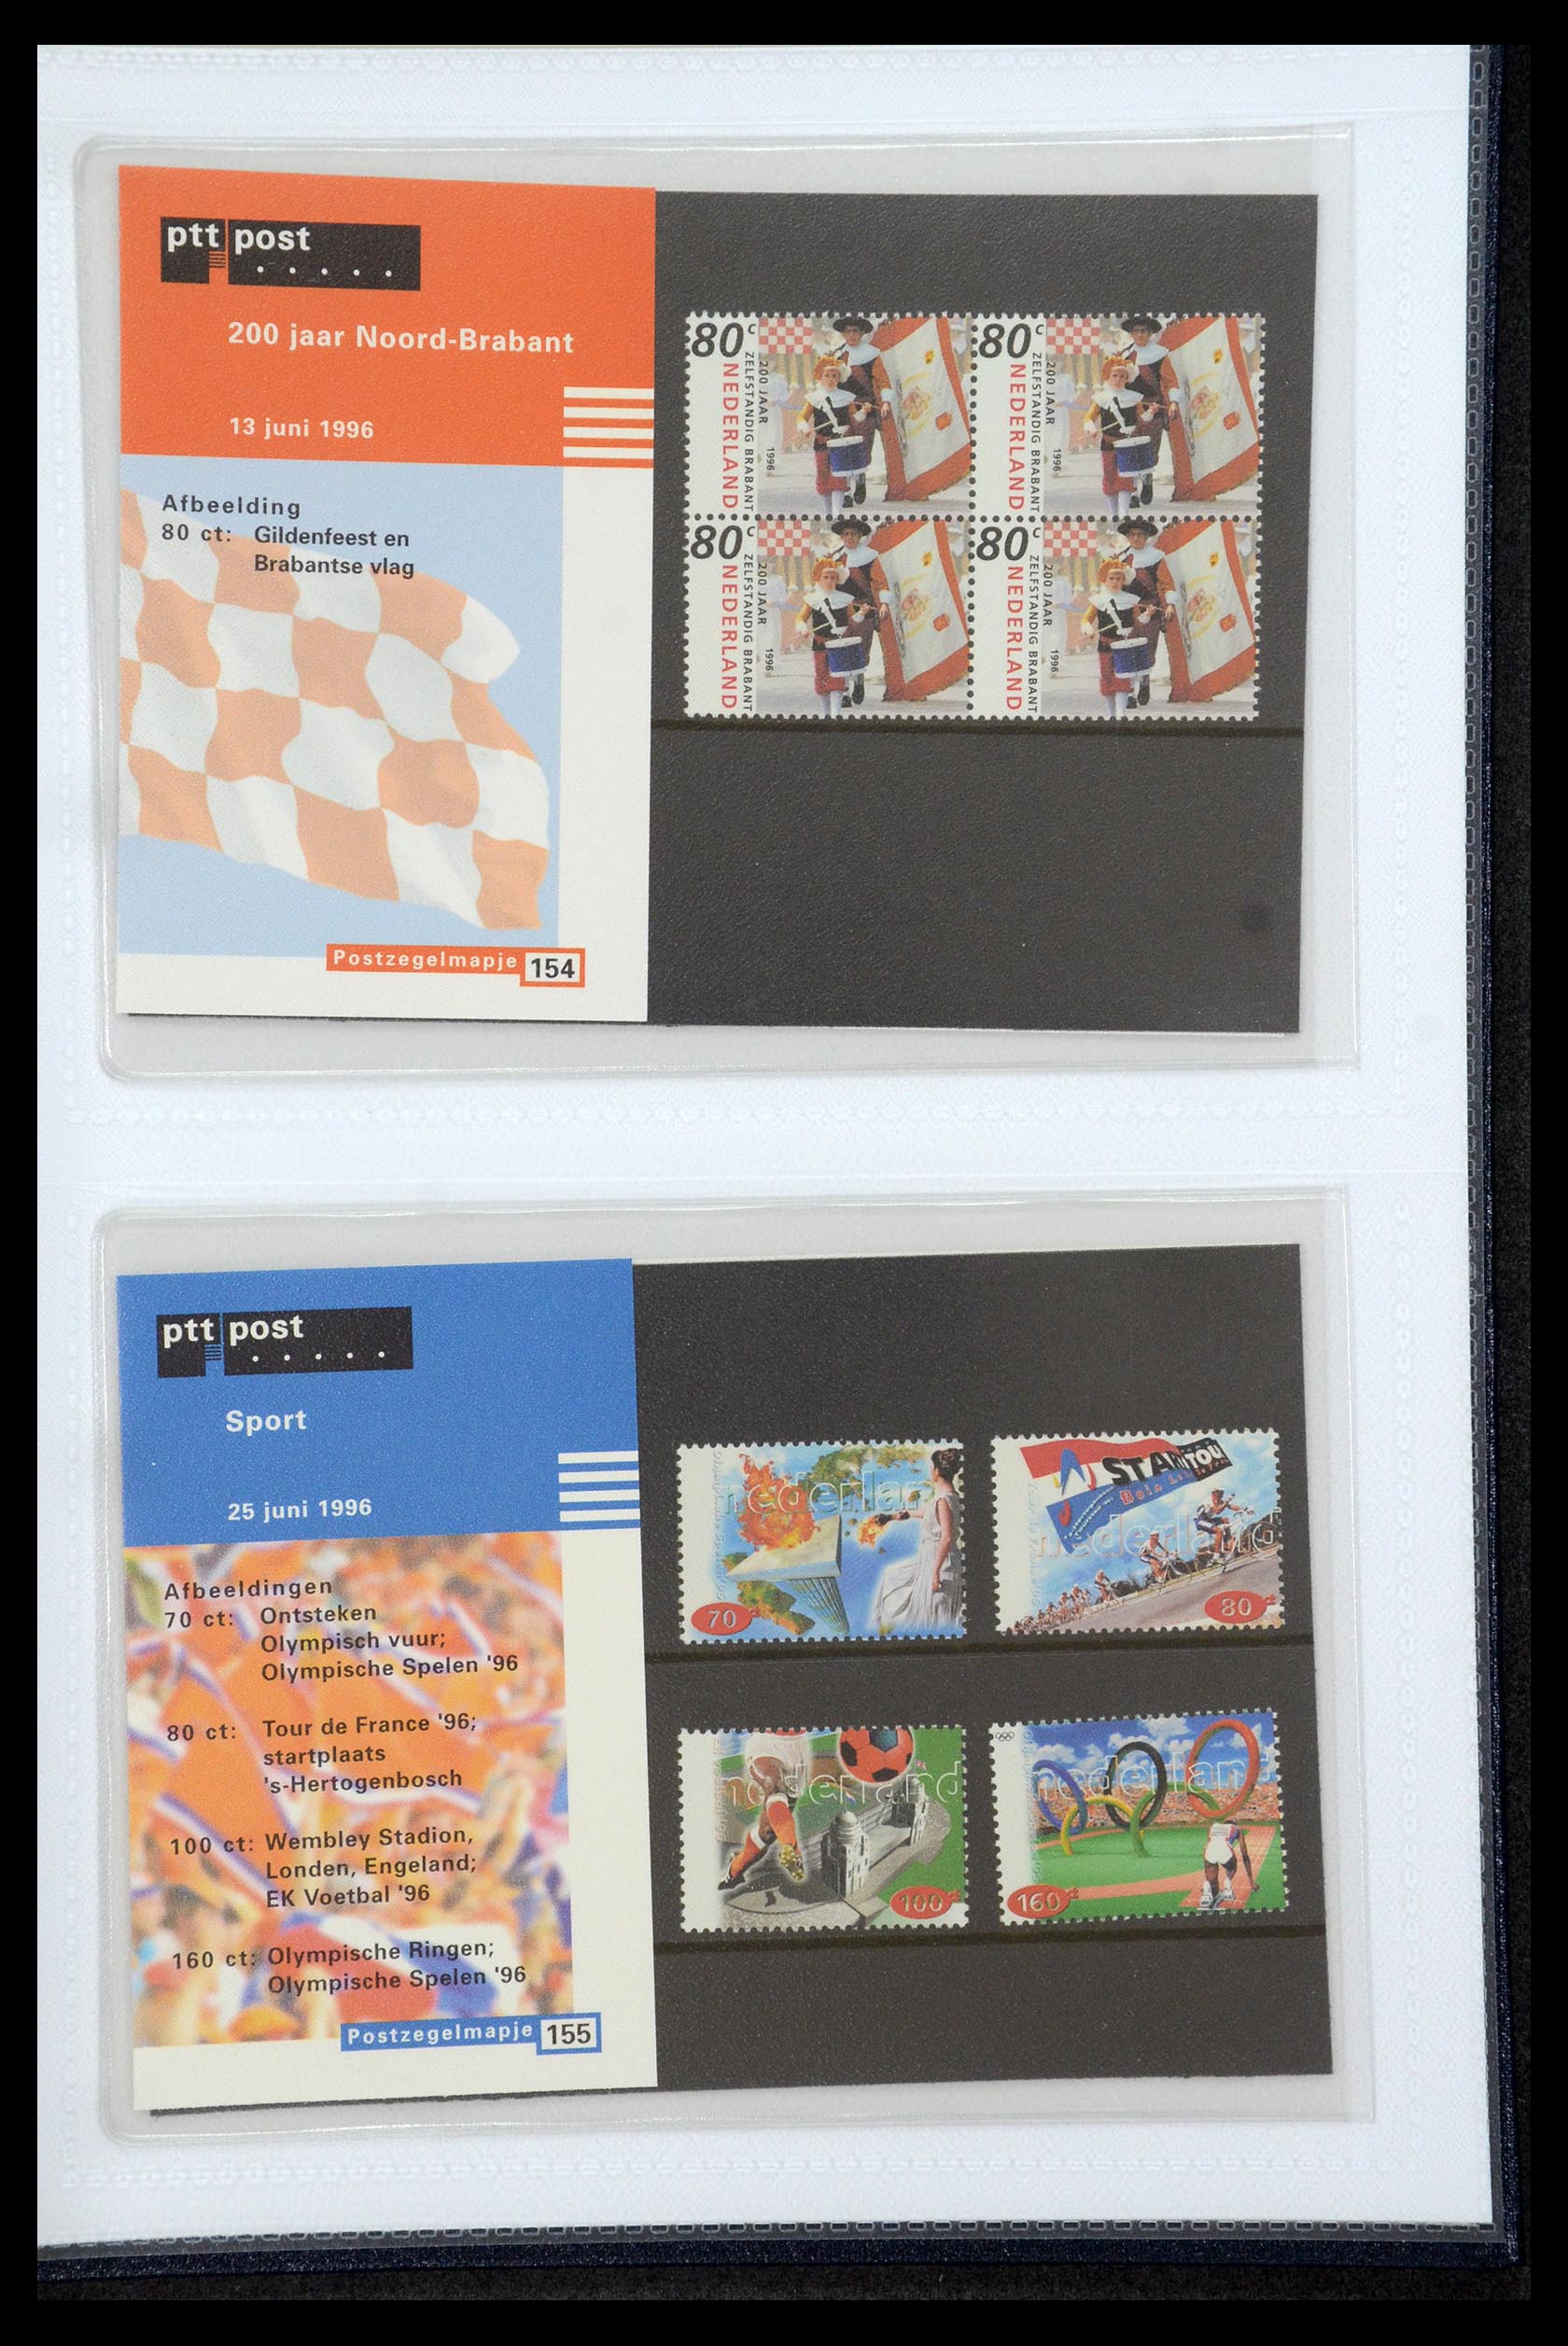 35947 080 - Stamp Collection 35947 Netherlands PTT presentation packs 1982-2019!